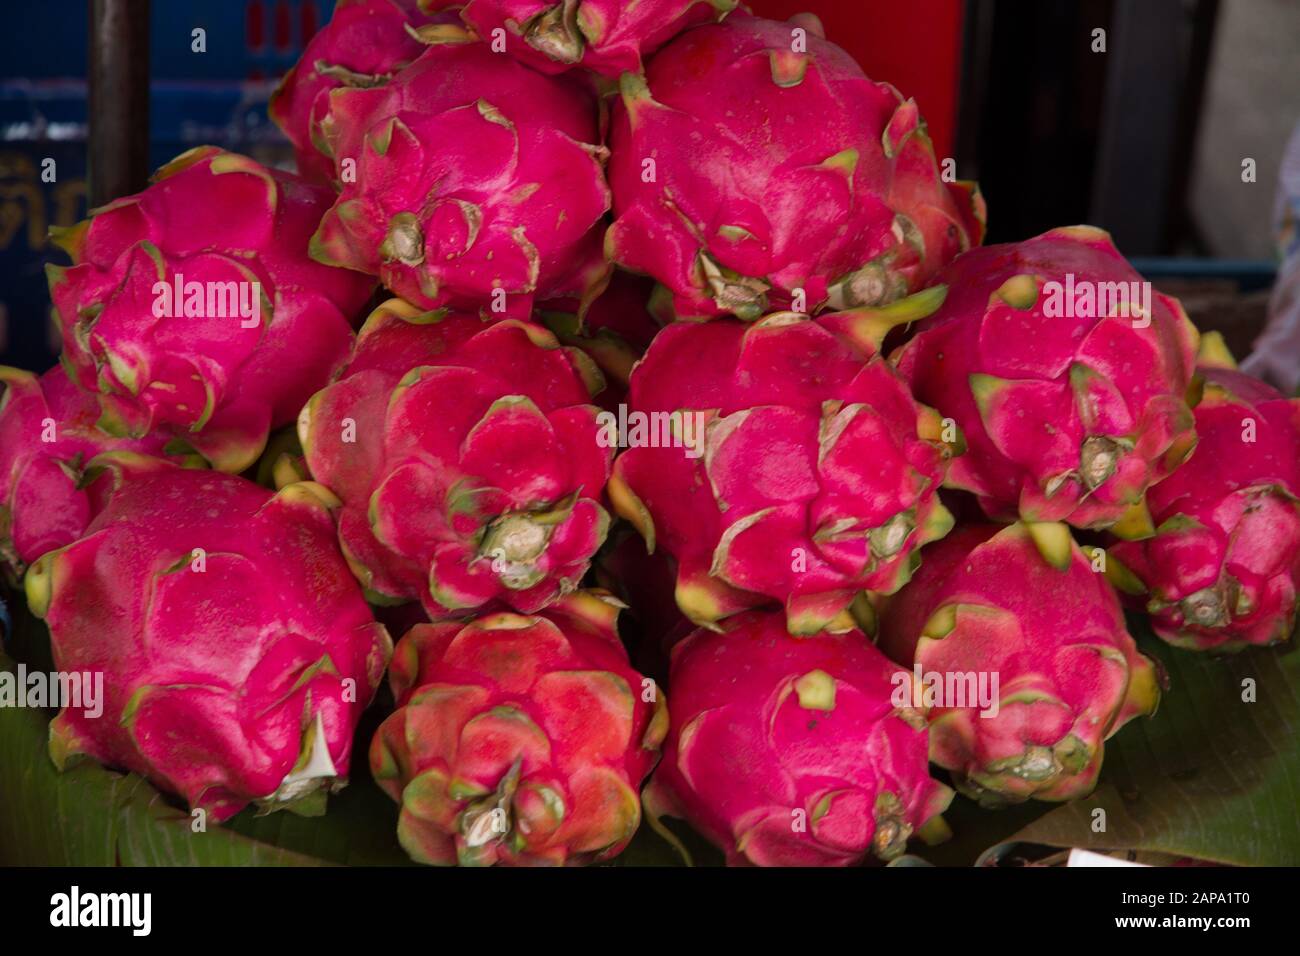 Frutti di drago, Thailandia frutti di libra freschi Foto Stock